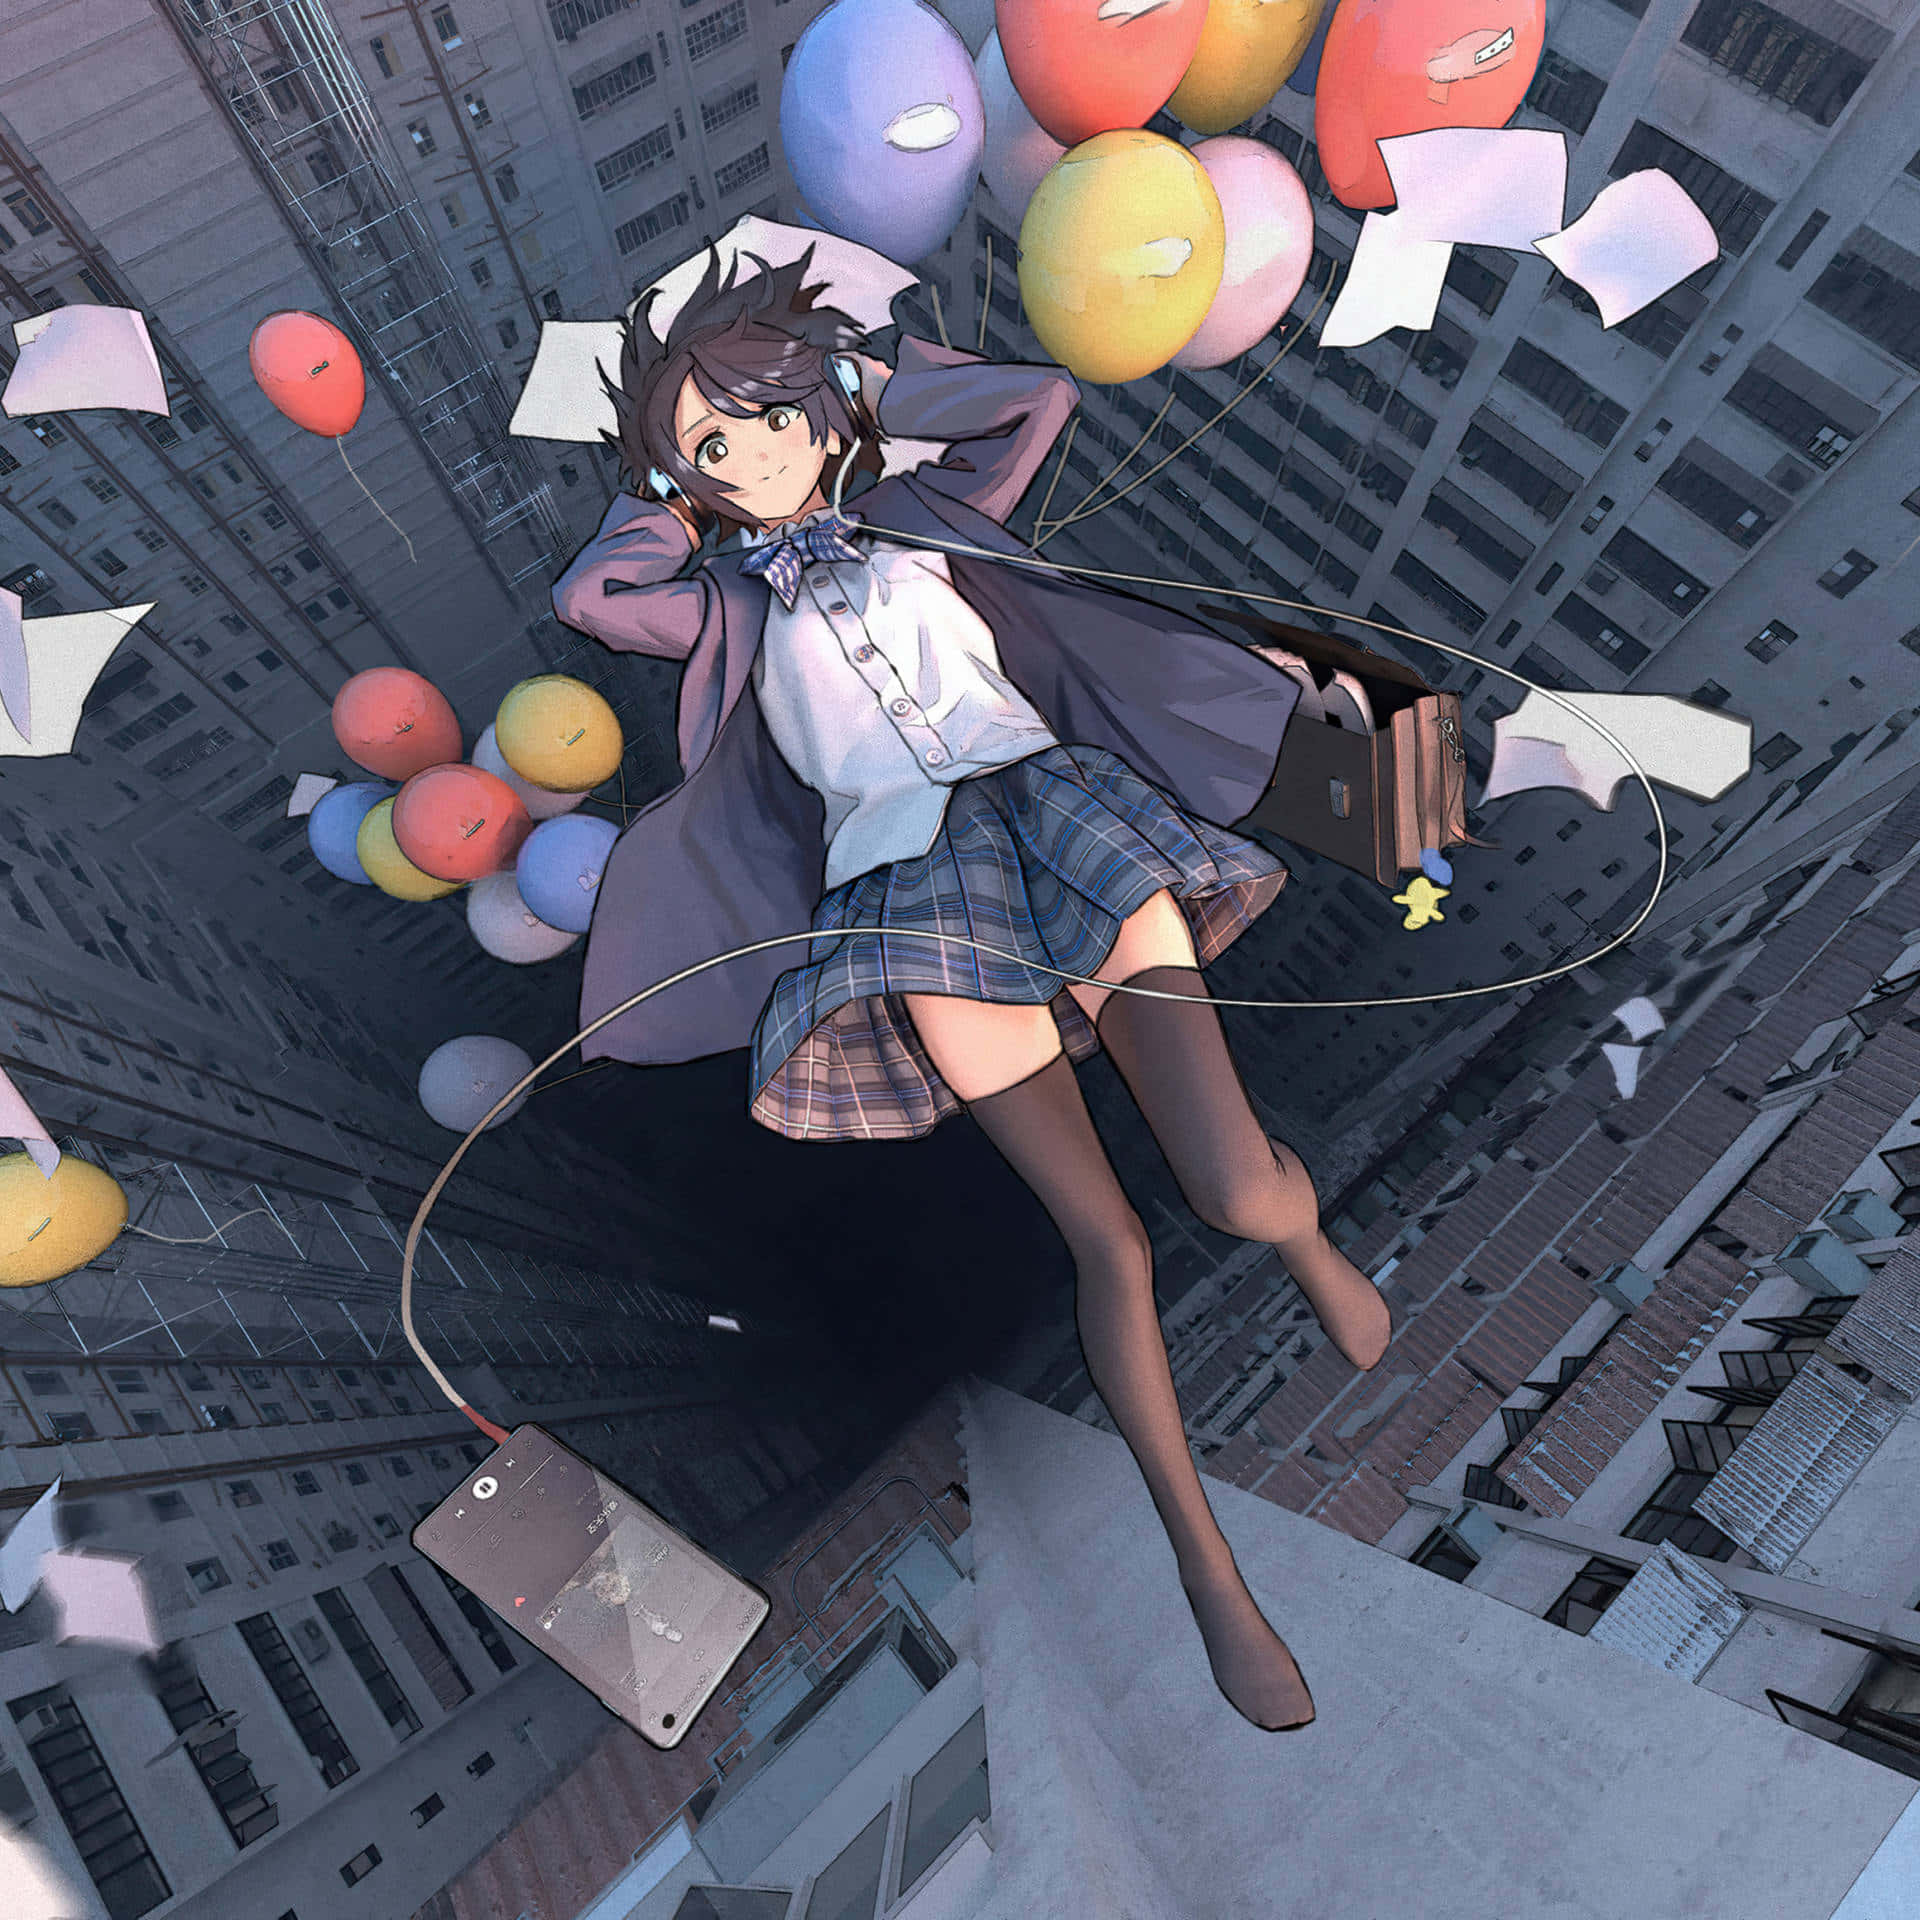 Ipad Anime Girl Balloons Background